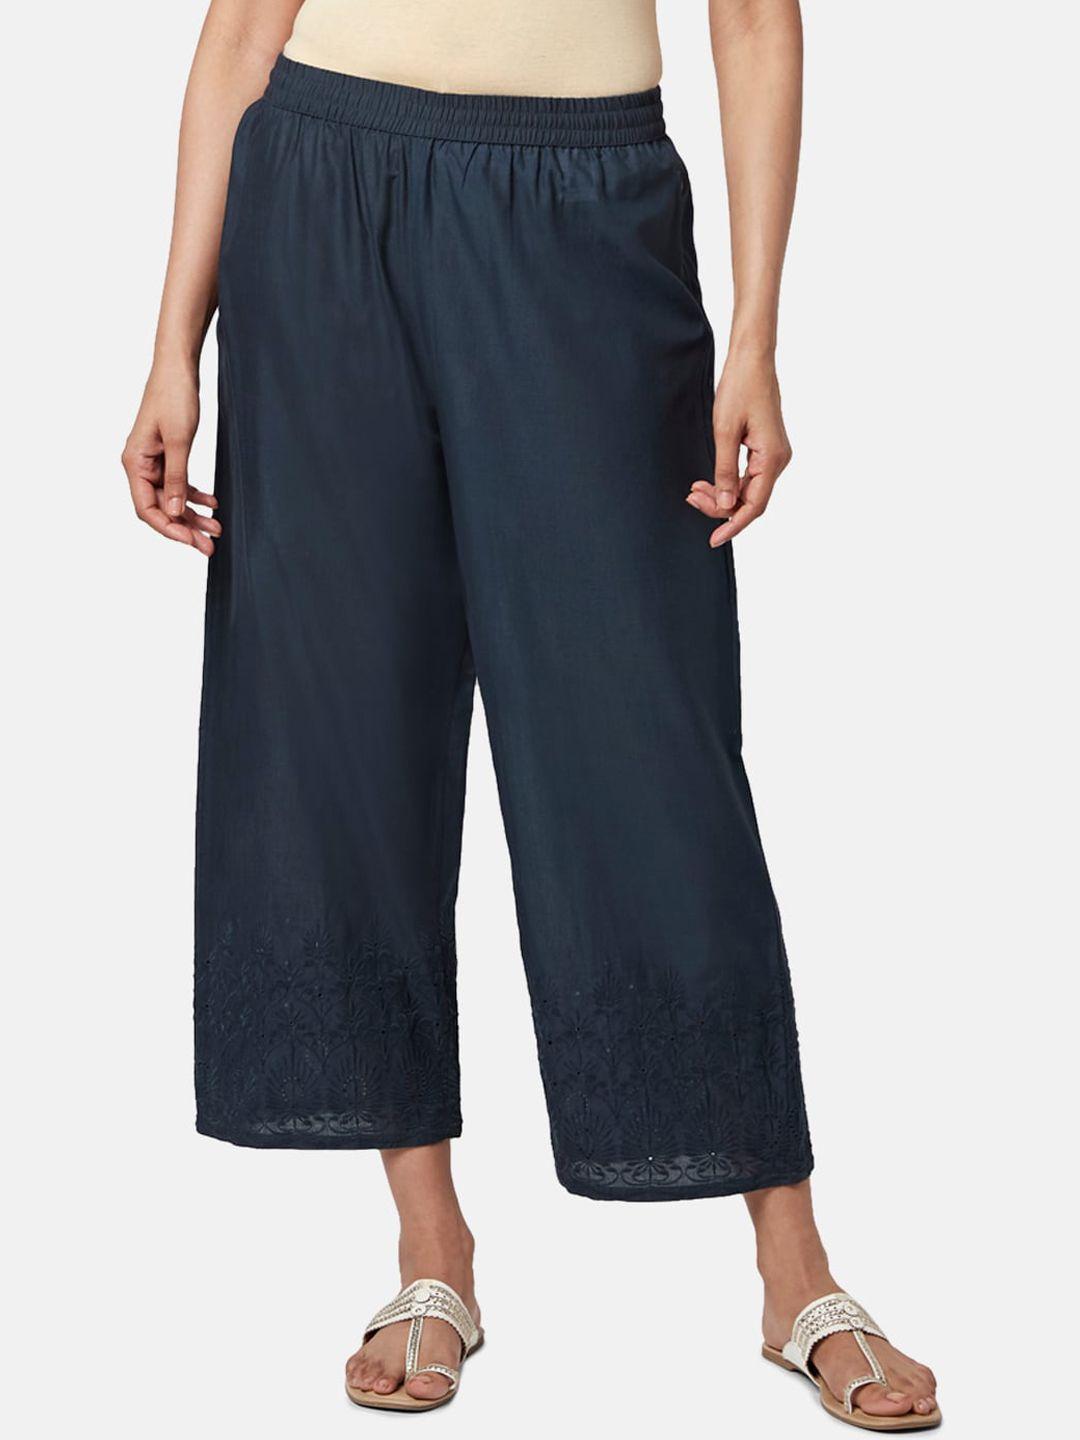 rangmanch-by-pantaloons-women-floral-cotton-trousers